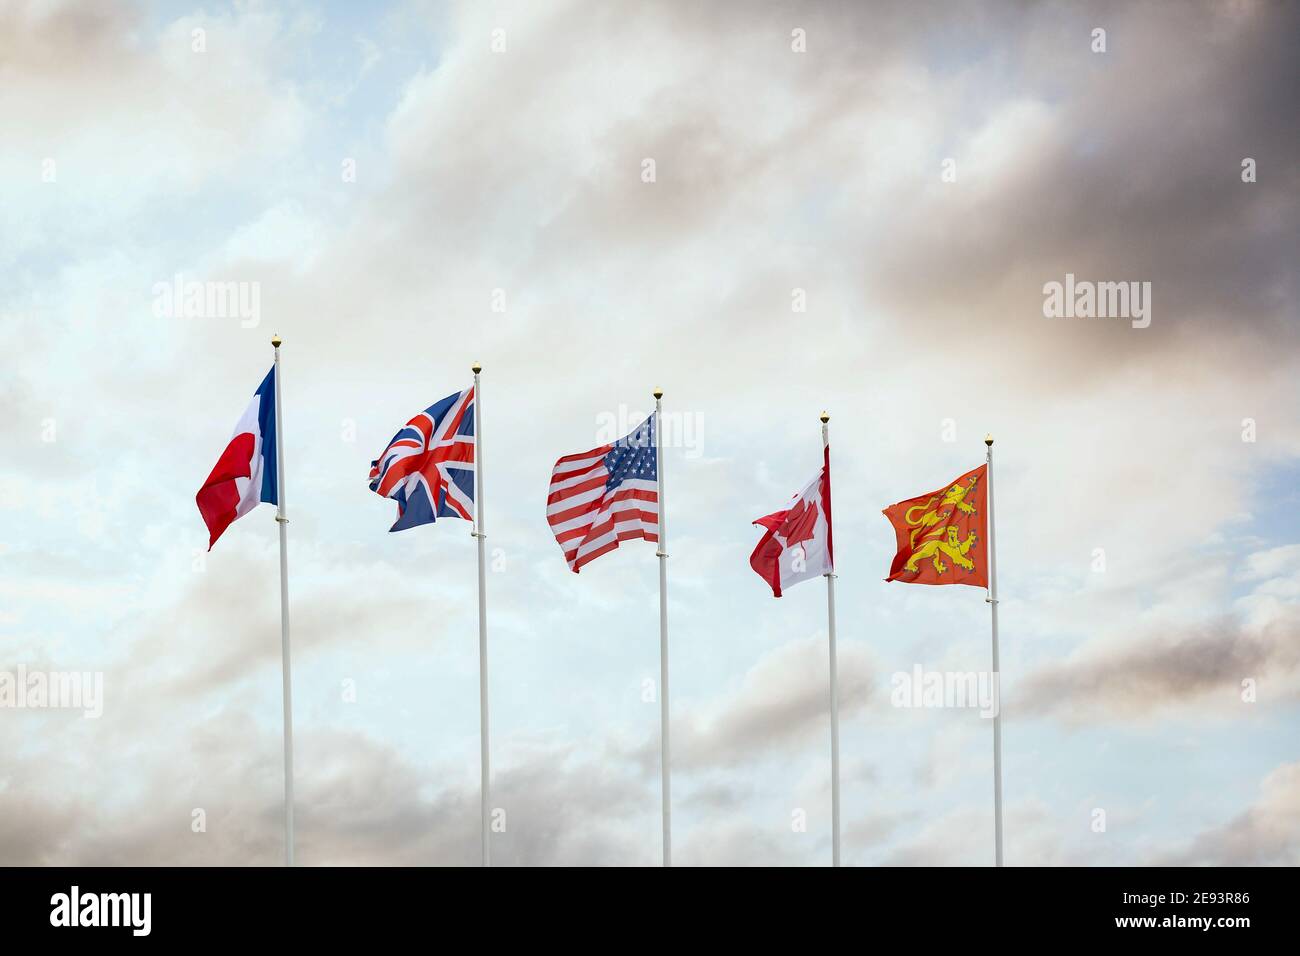 Allied Powers Ww2 Flags